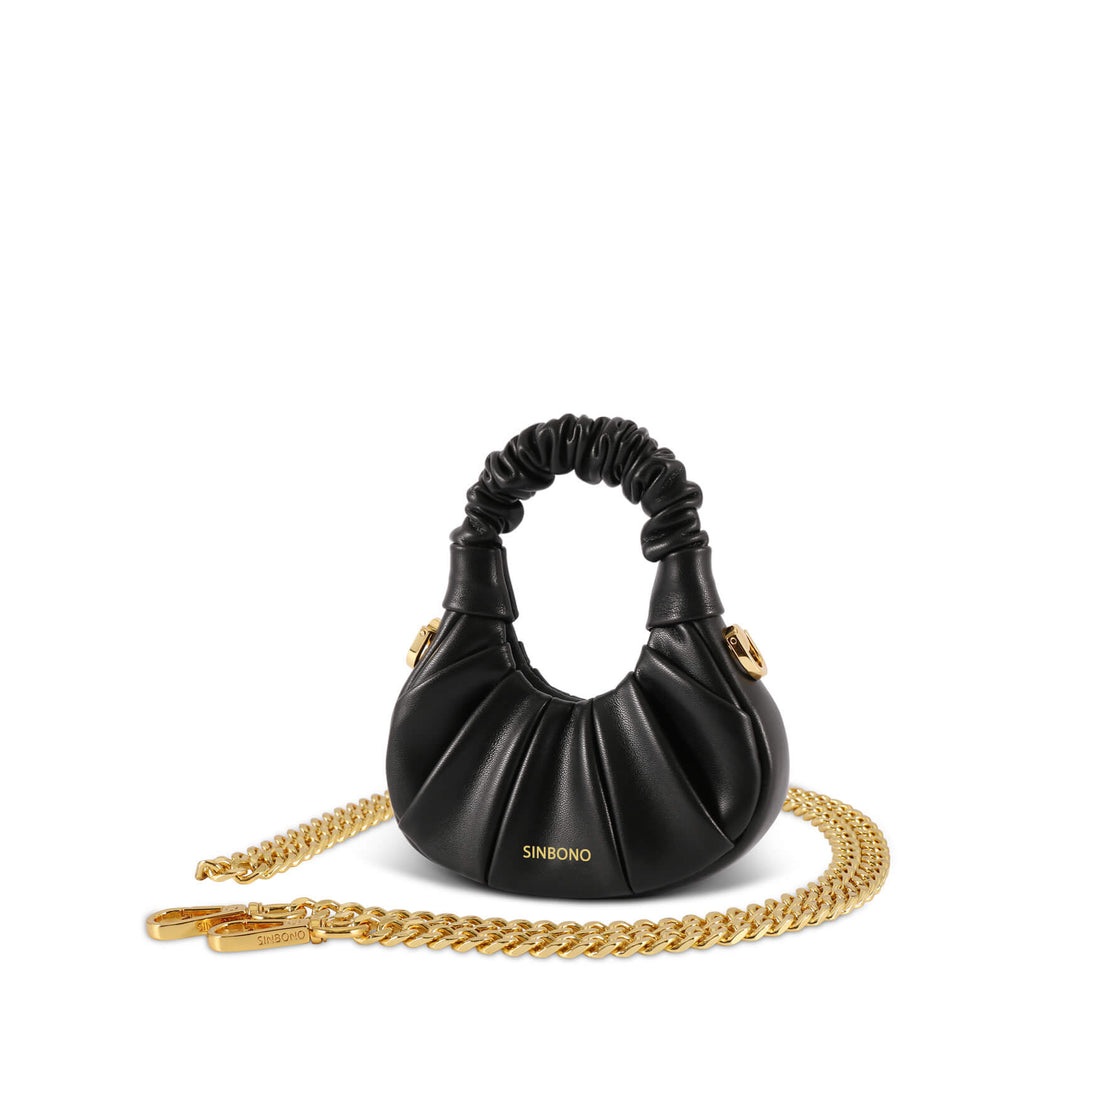 SINBONO's Black Mini Ava Crossbody Bag - Vegan Leather Handbag